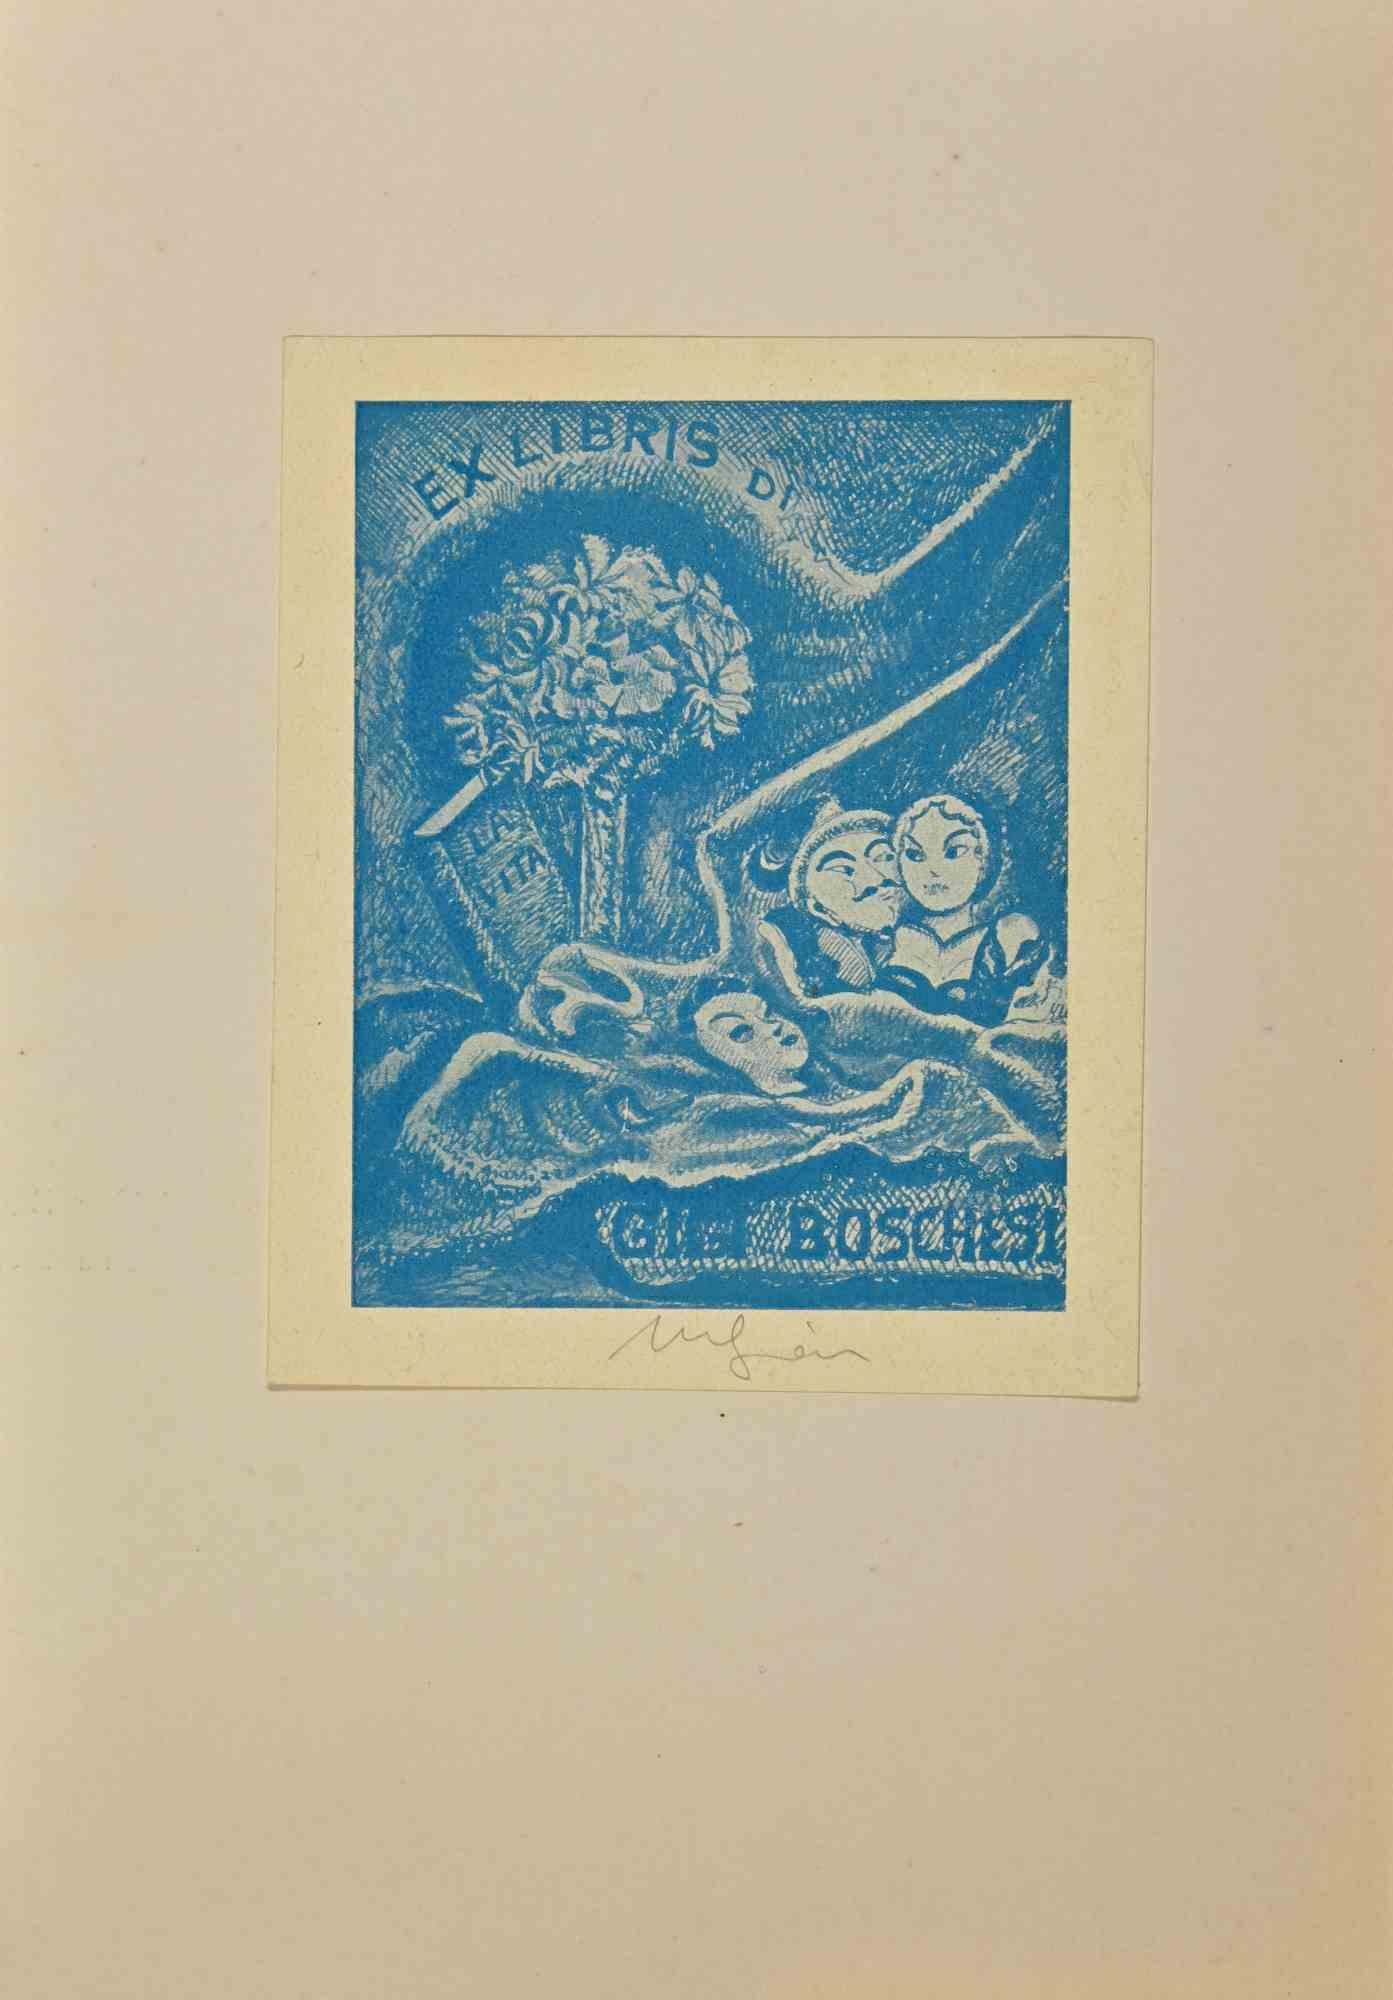  Ex Libris  di Gigi Boschesi - Gravure sur bois - Milieu du XXe siècle